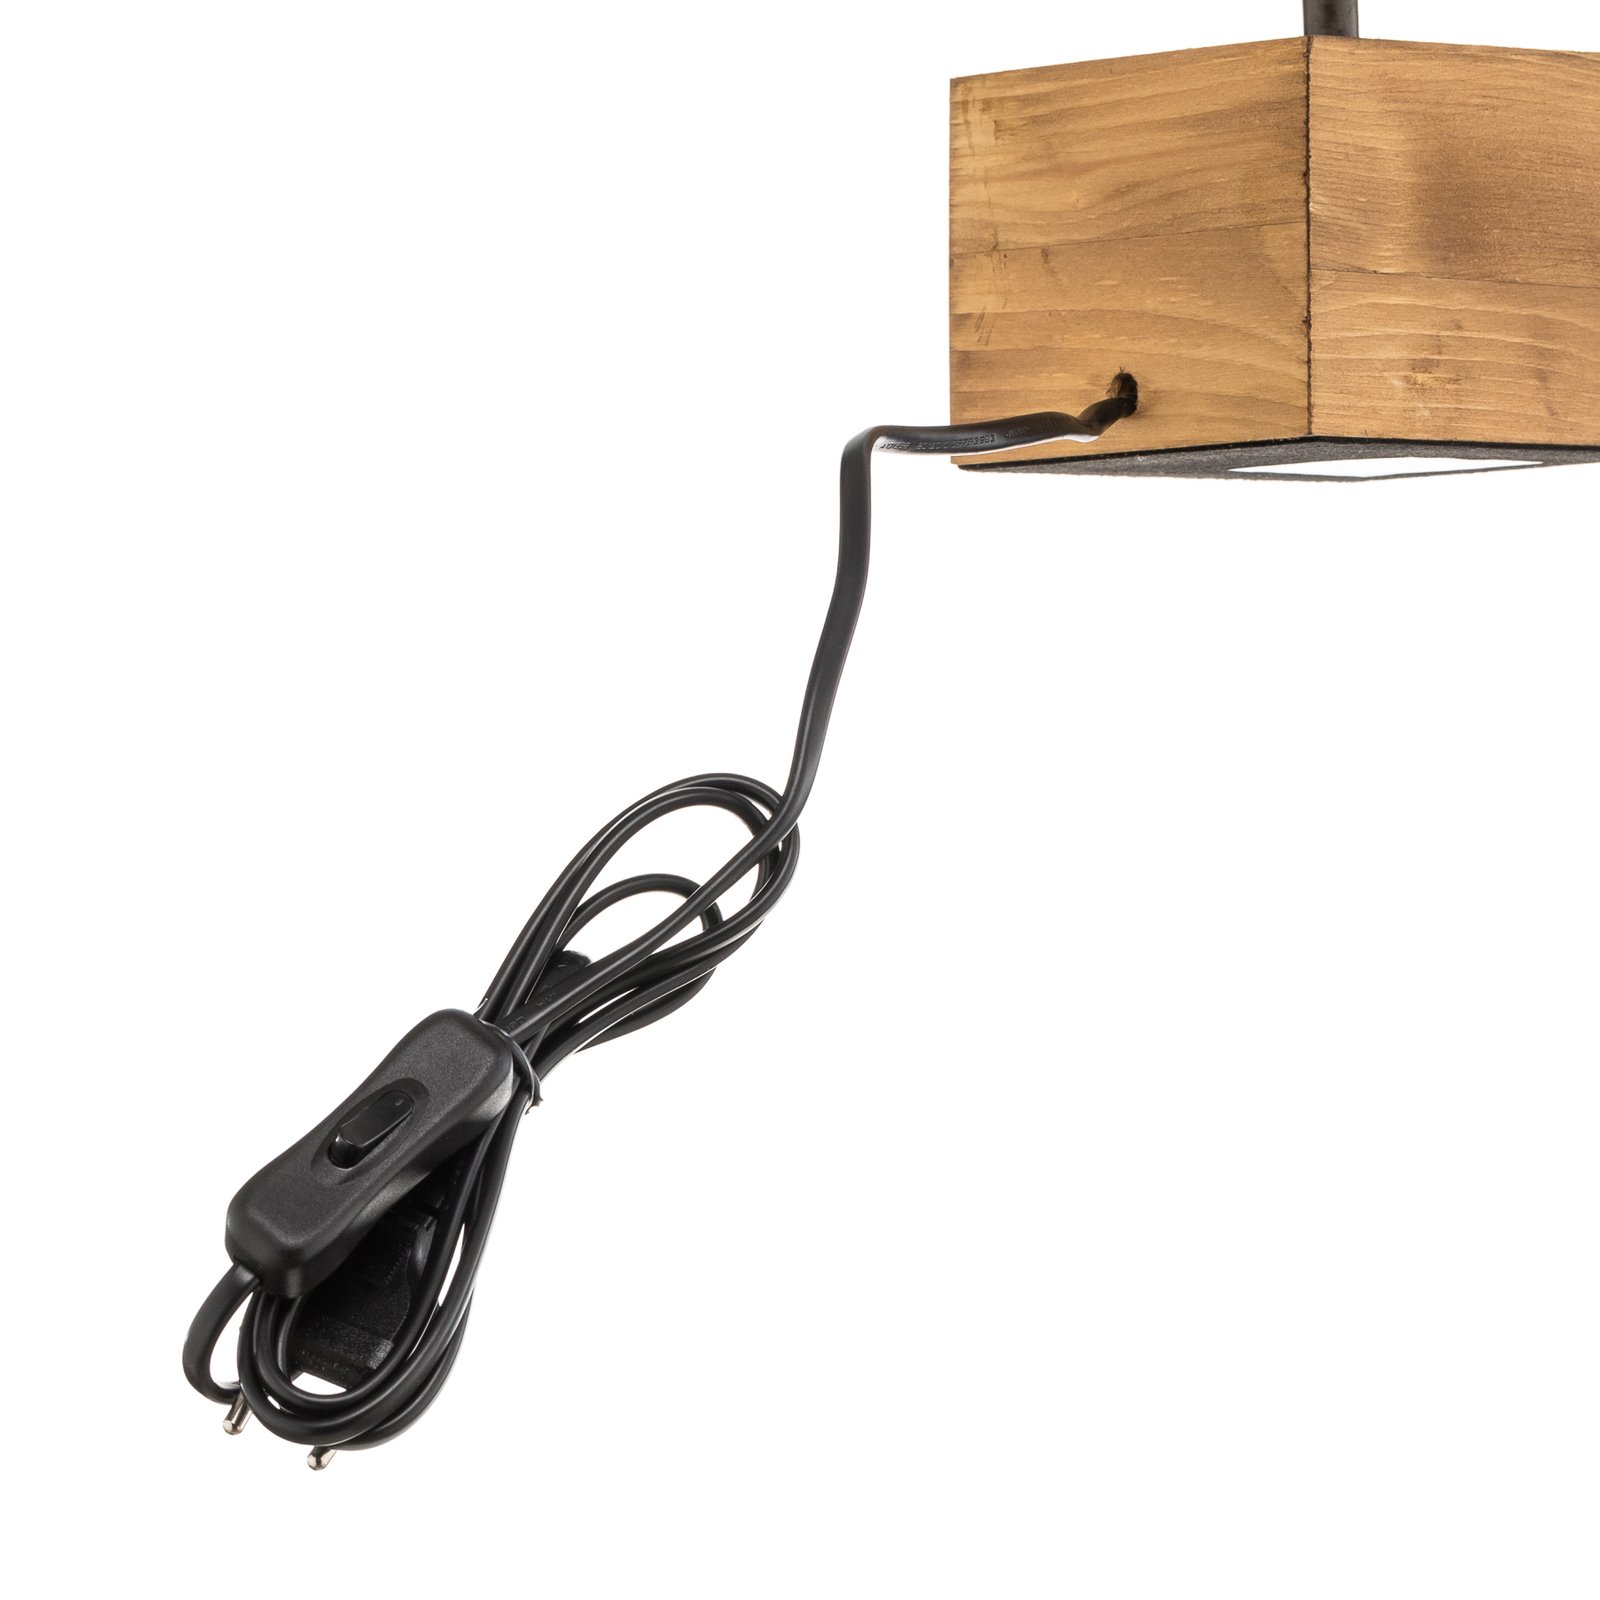 Tafellamp Woody met houten voet, 12 cm x 12 cm